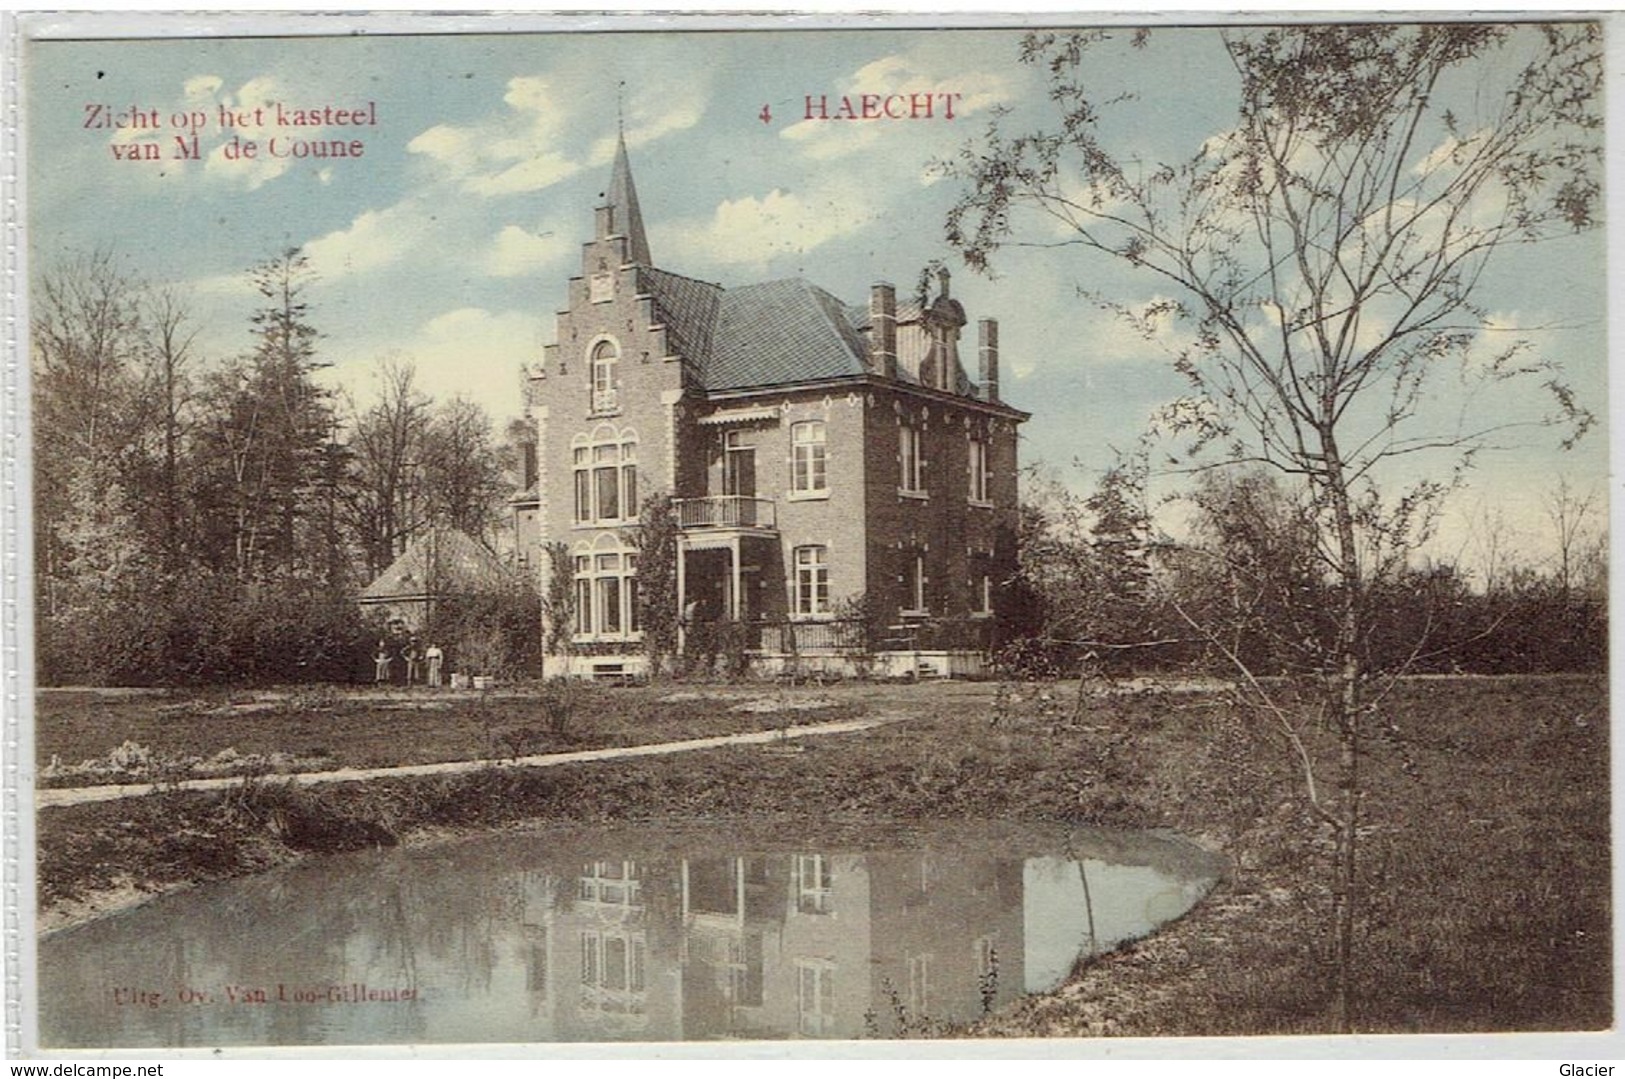 N° 4 - HAECHT - Zicht Op Het Kasteel Van M. De Coune - Spoorwegstempel Haecht - 22 Sept 1912 - Cachet Chemins De Fer - Haacht